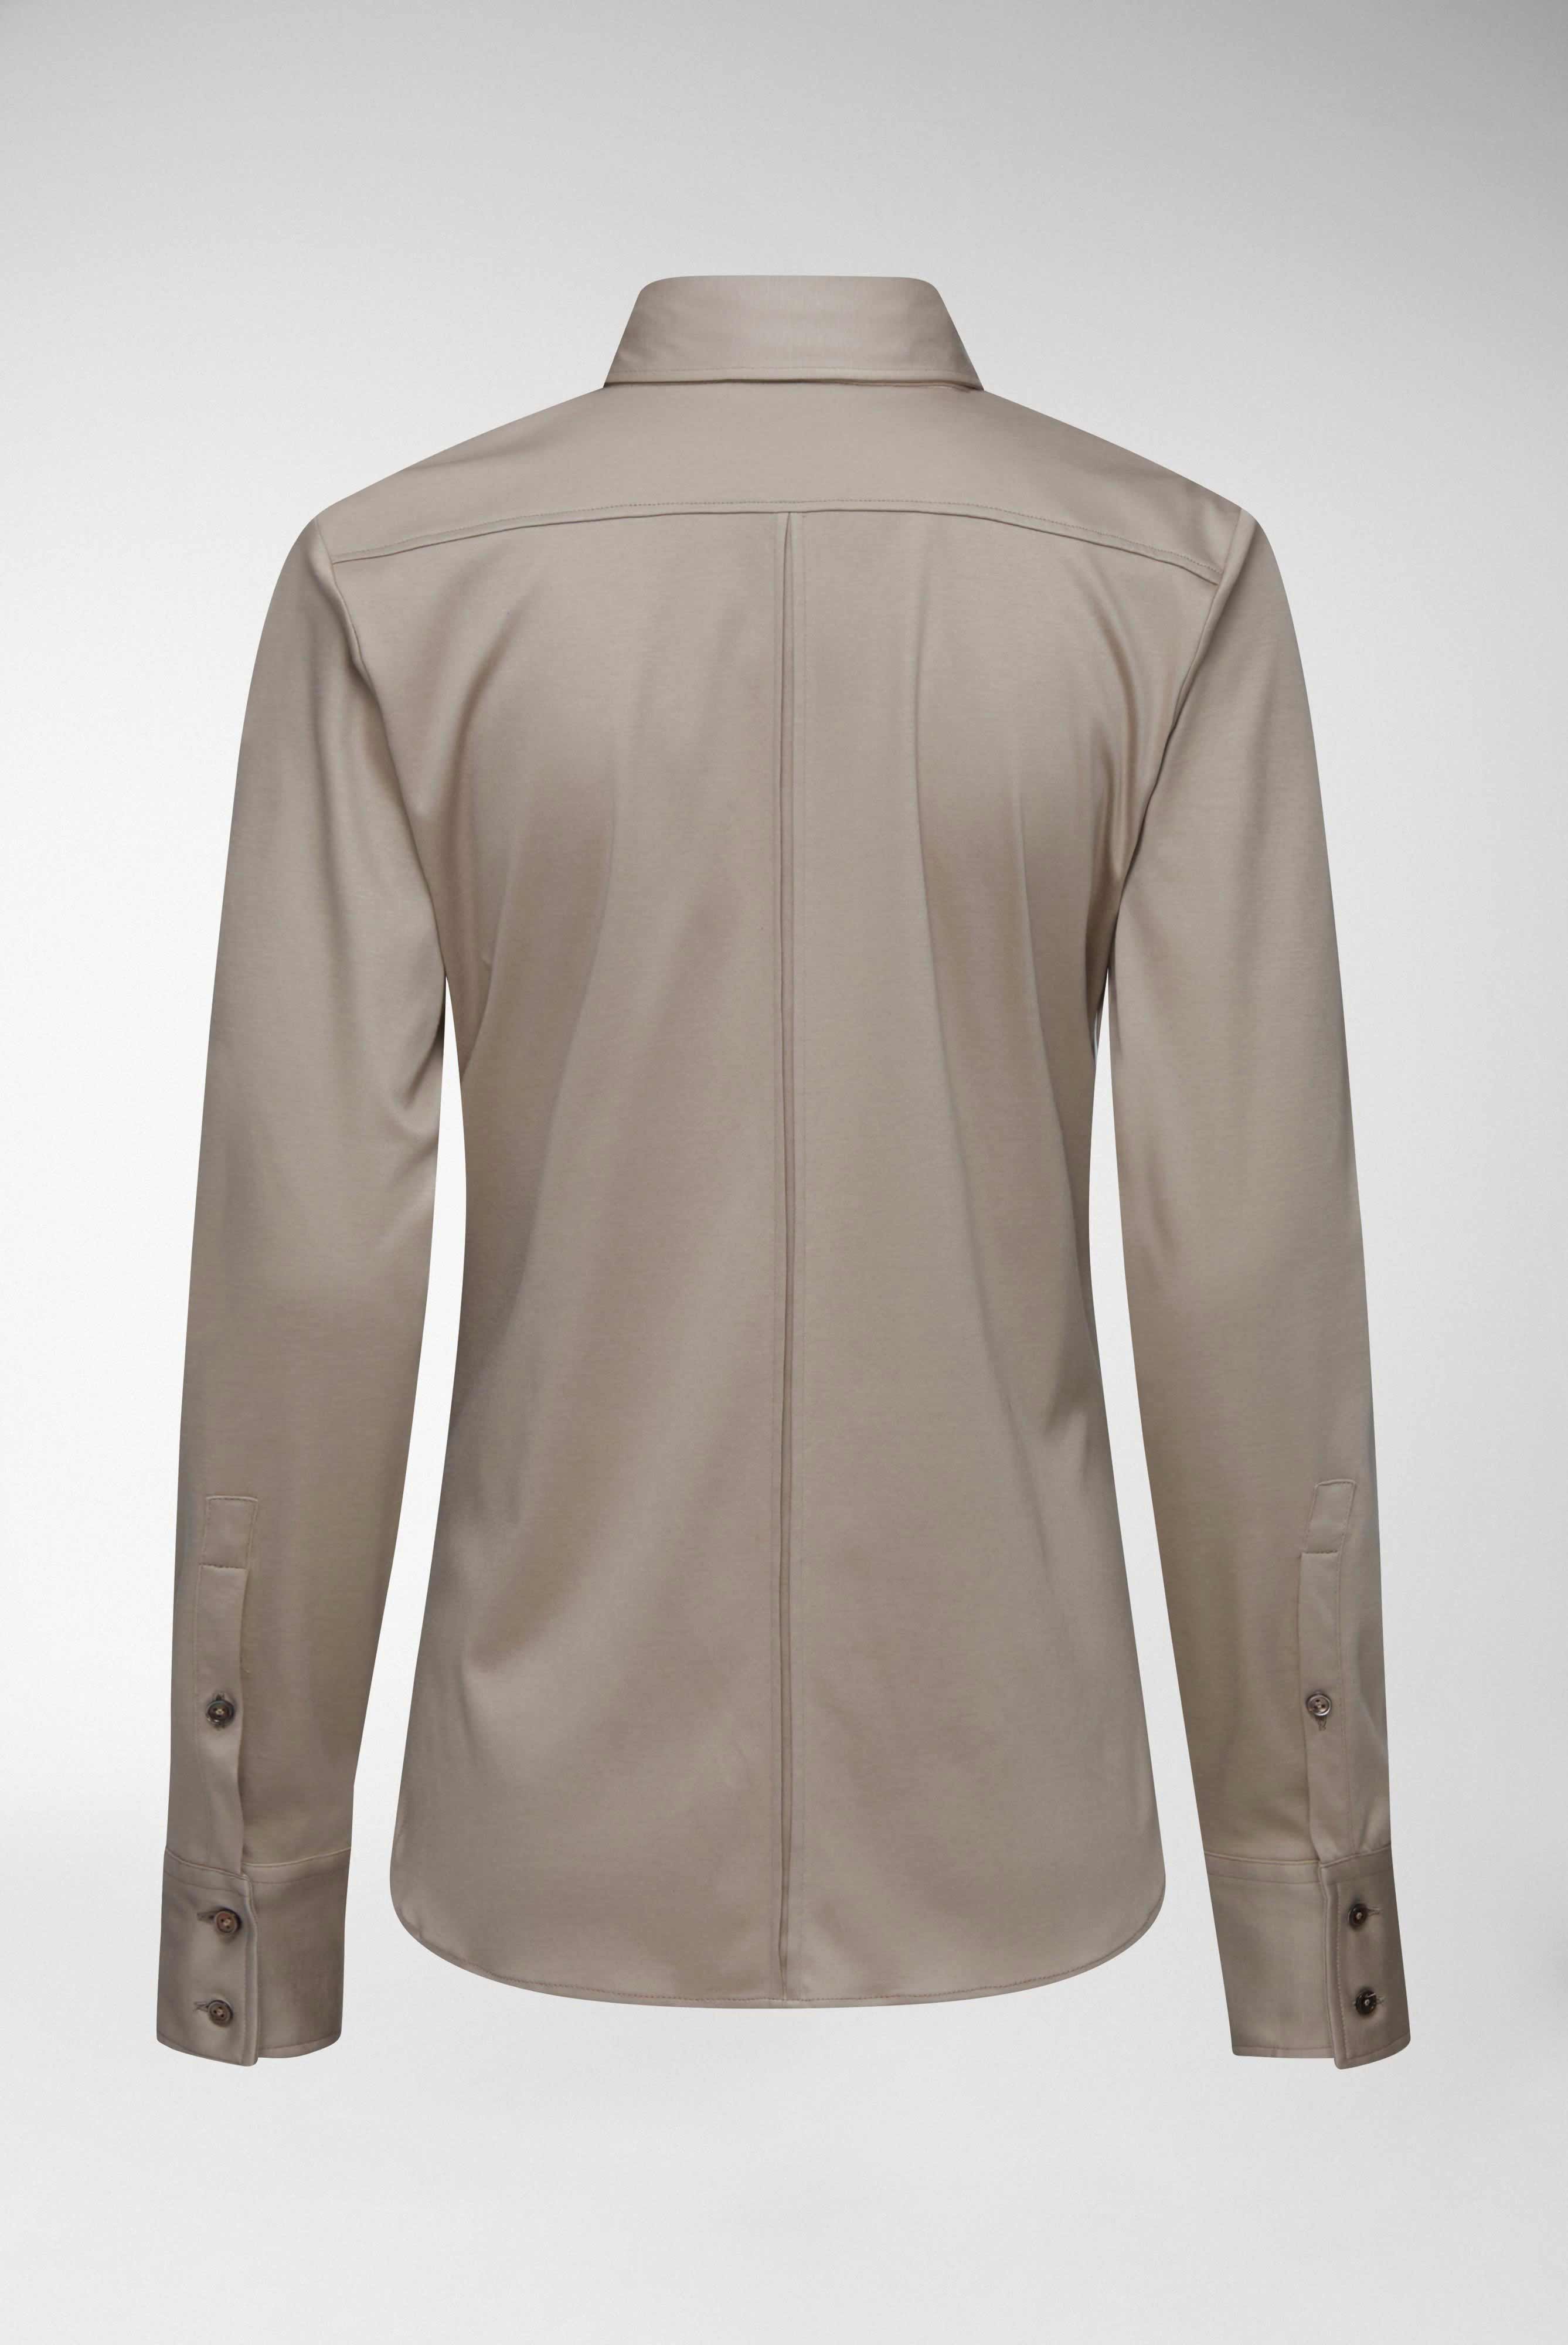 Casual Blusen+Taillierte Jersey Hemdbluse aus Schweizer Baumwolle+05.603Y..180031.140.44